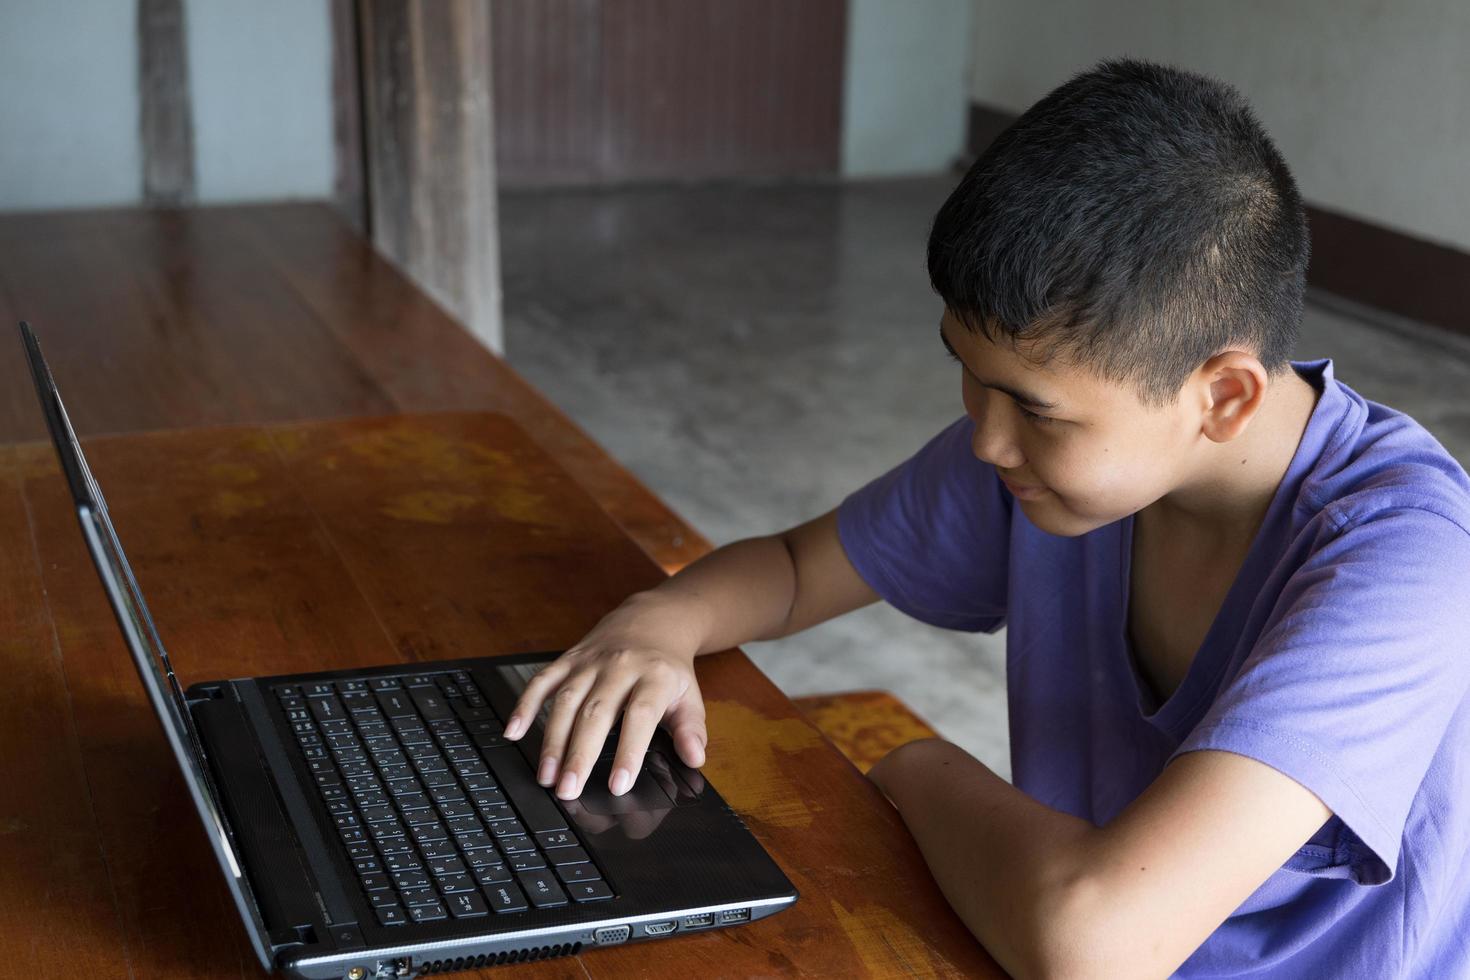 le garçon a l'intention d'étudier en ligne dans les provinces. photo